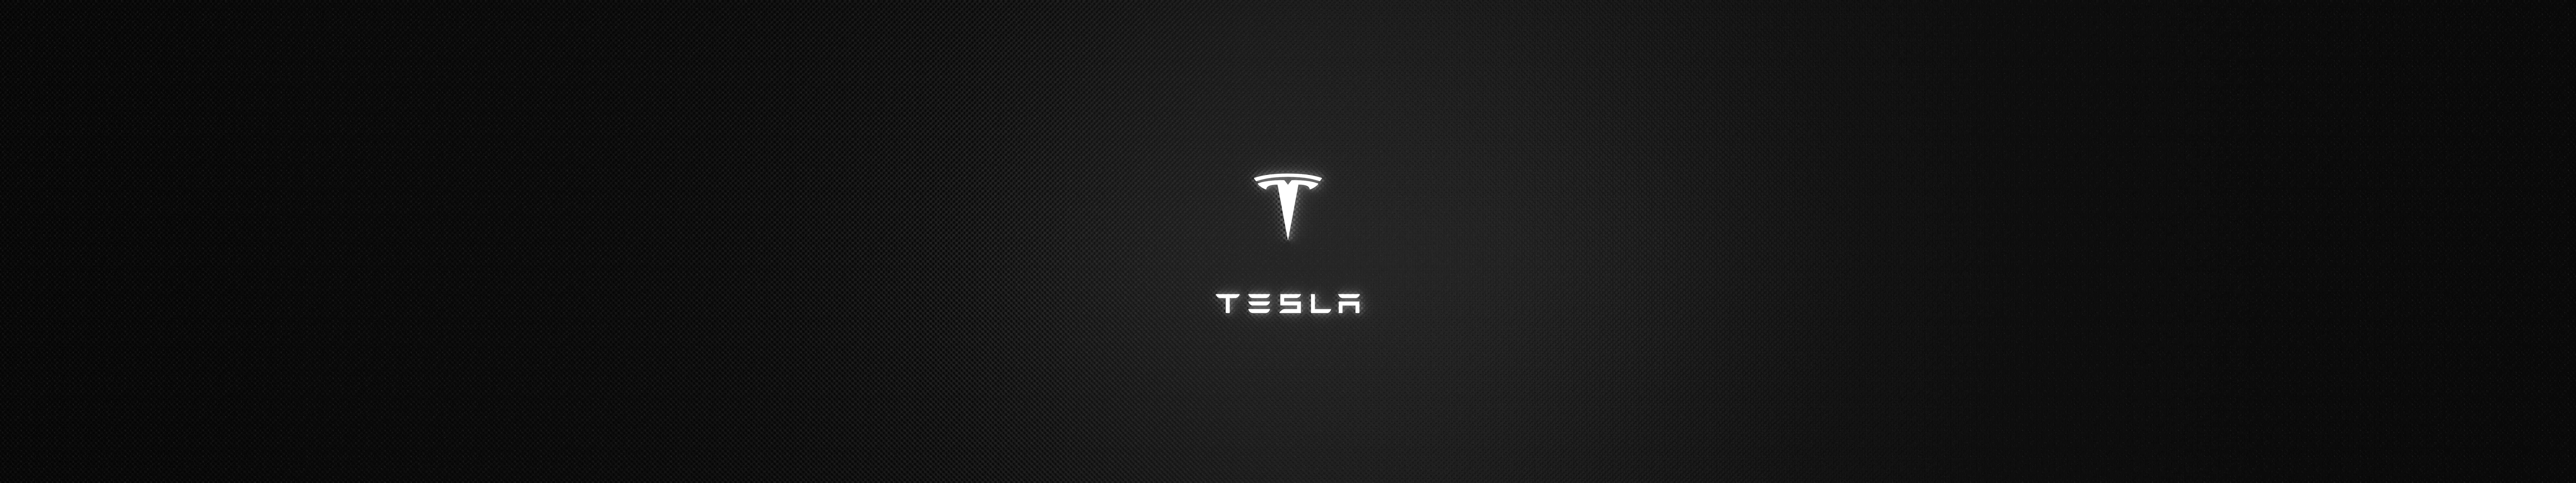 Teslalogo Oscuro Para Triple Monitor Fondo de pantalla